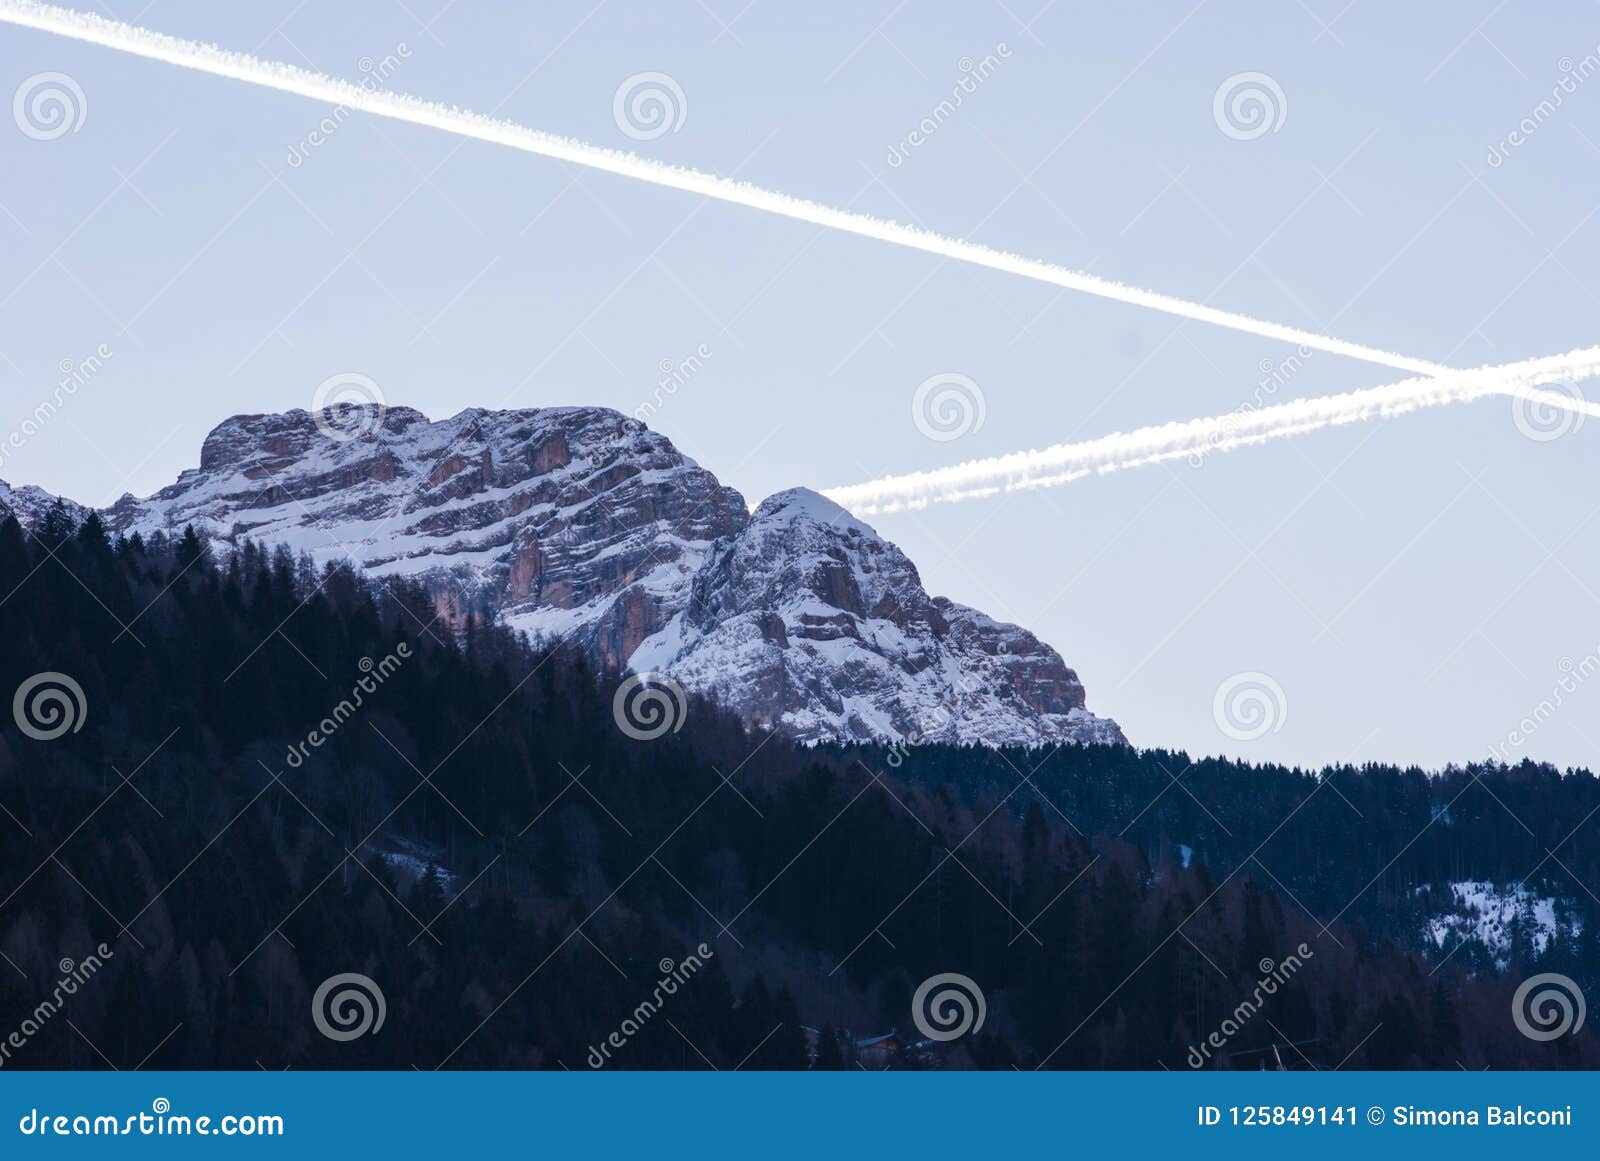 Del av Dolomites med snö på skymningen i Trentino Alto Ad. Sikt av Dolomitesbergen med ett kors av upplysta vaker som lämnas från nivå två